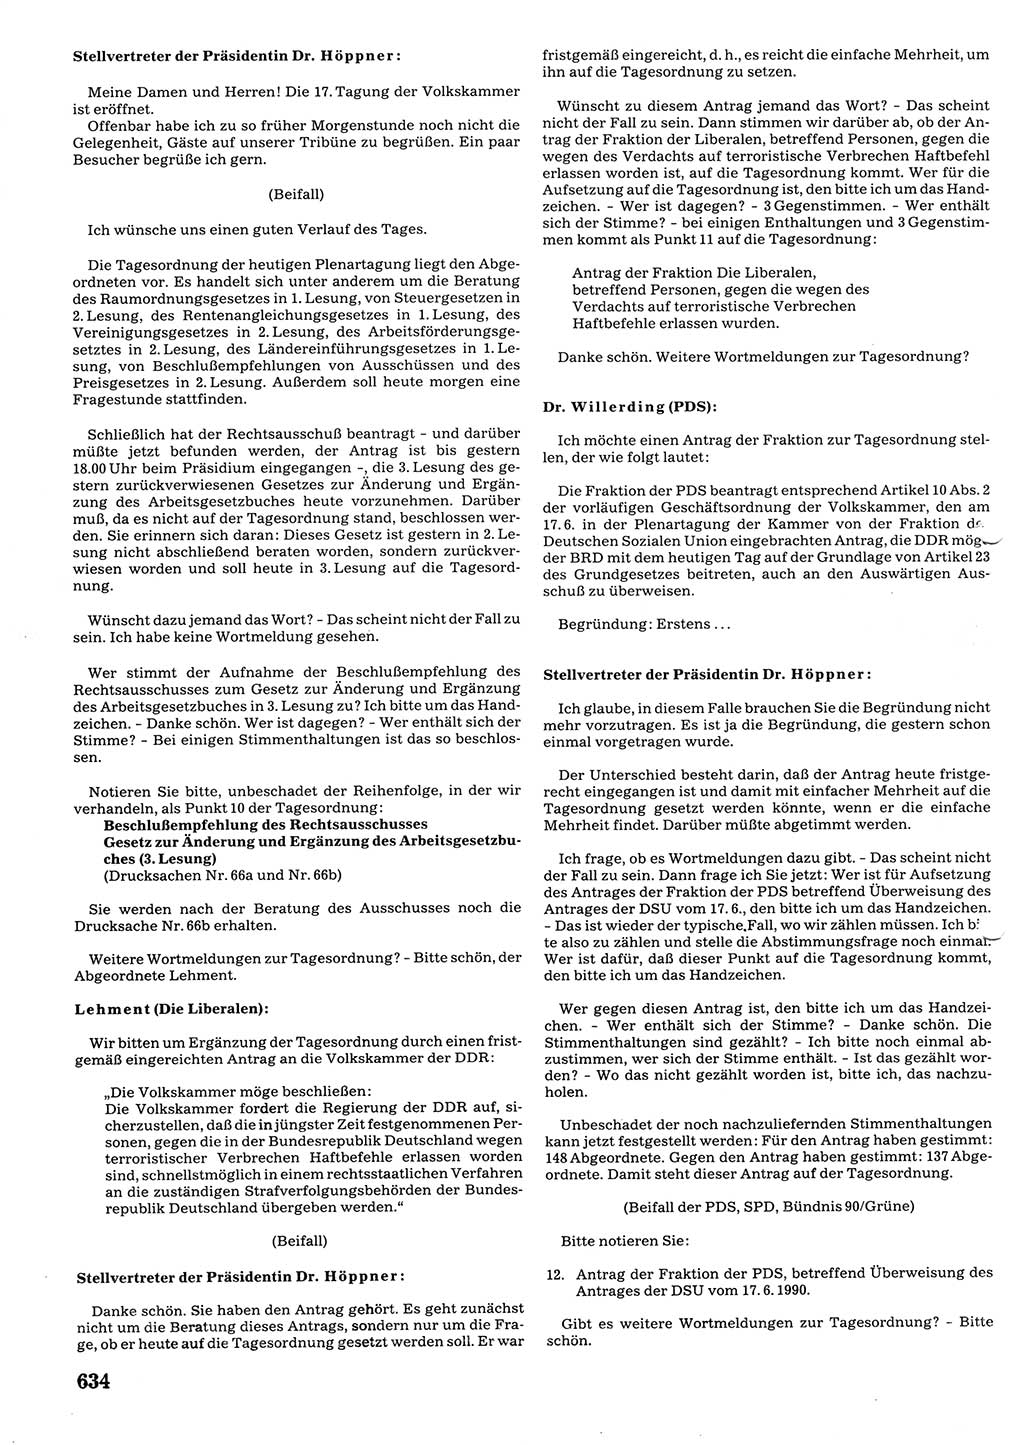 Tagungen der Volkskammer (VK) der Deutschen Demokratischen Republik (DDR), 10. Wahlperiode 1990, Seite 634 (VK. DDR 10. WP. 1990, Prot. Tg. 1-38, 5.4.-2.10.1990, S. 634)